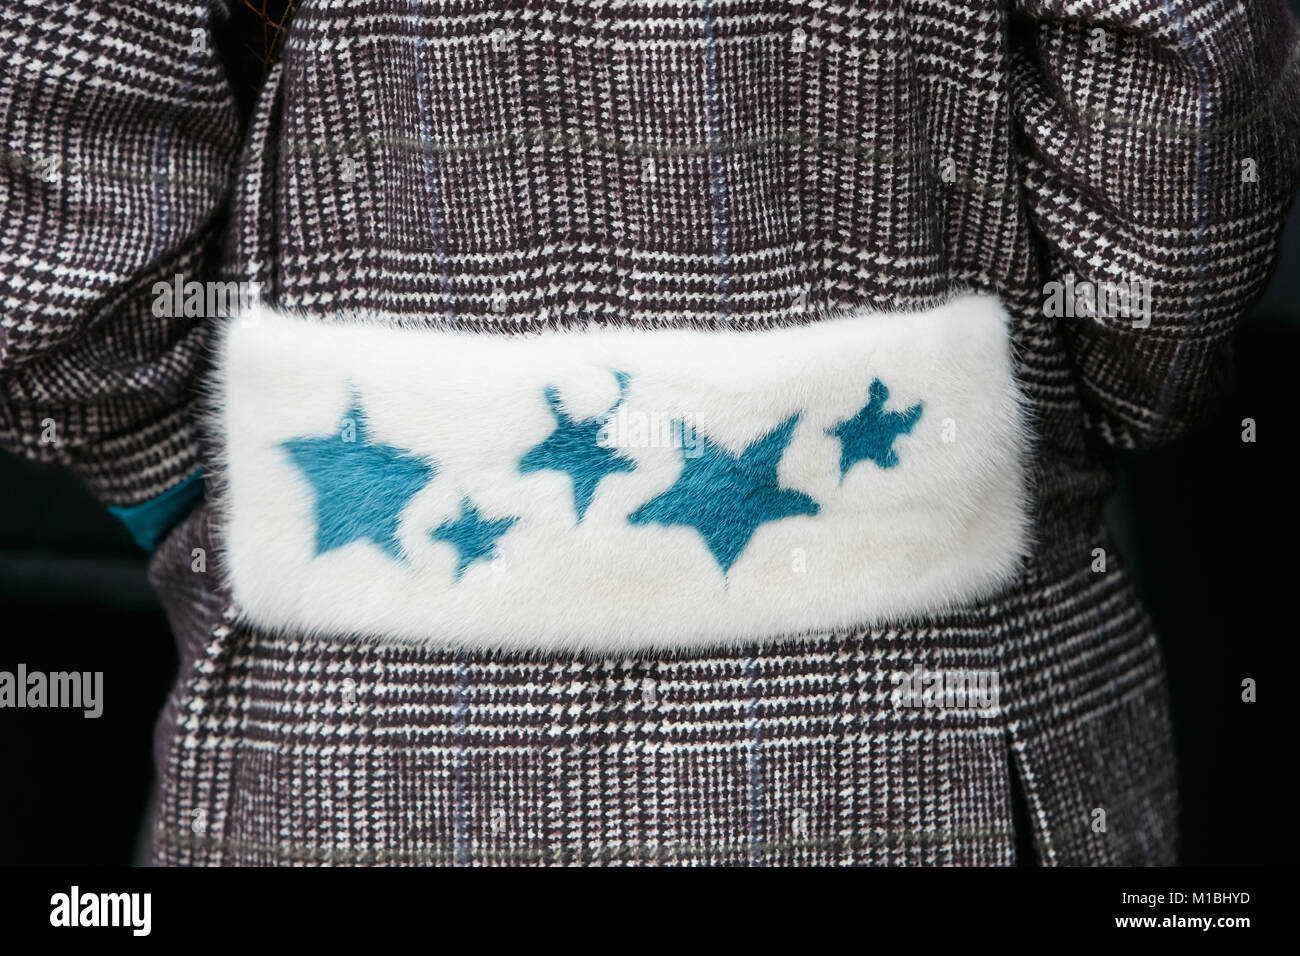 Milano - 15 gennaio: Donna con pelliccia bianca cinghia con stelle blu prima di Pal Zileri sfilata di moda, la Settimana della Moda Milanese street style on gennaio 15, 2018 in M Foto Stock